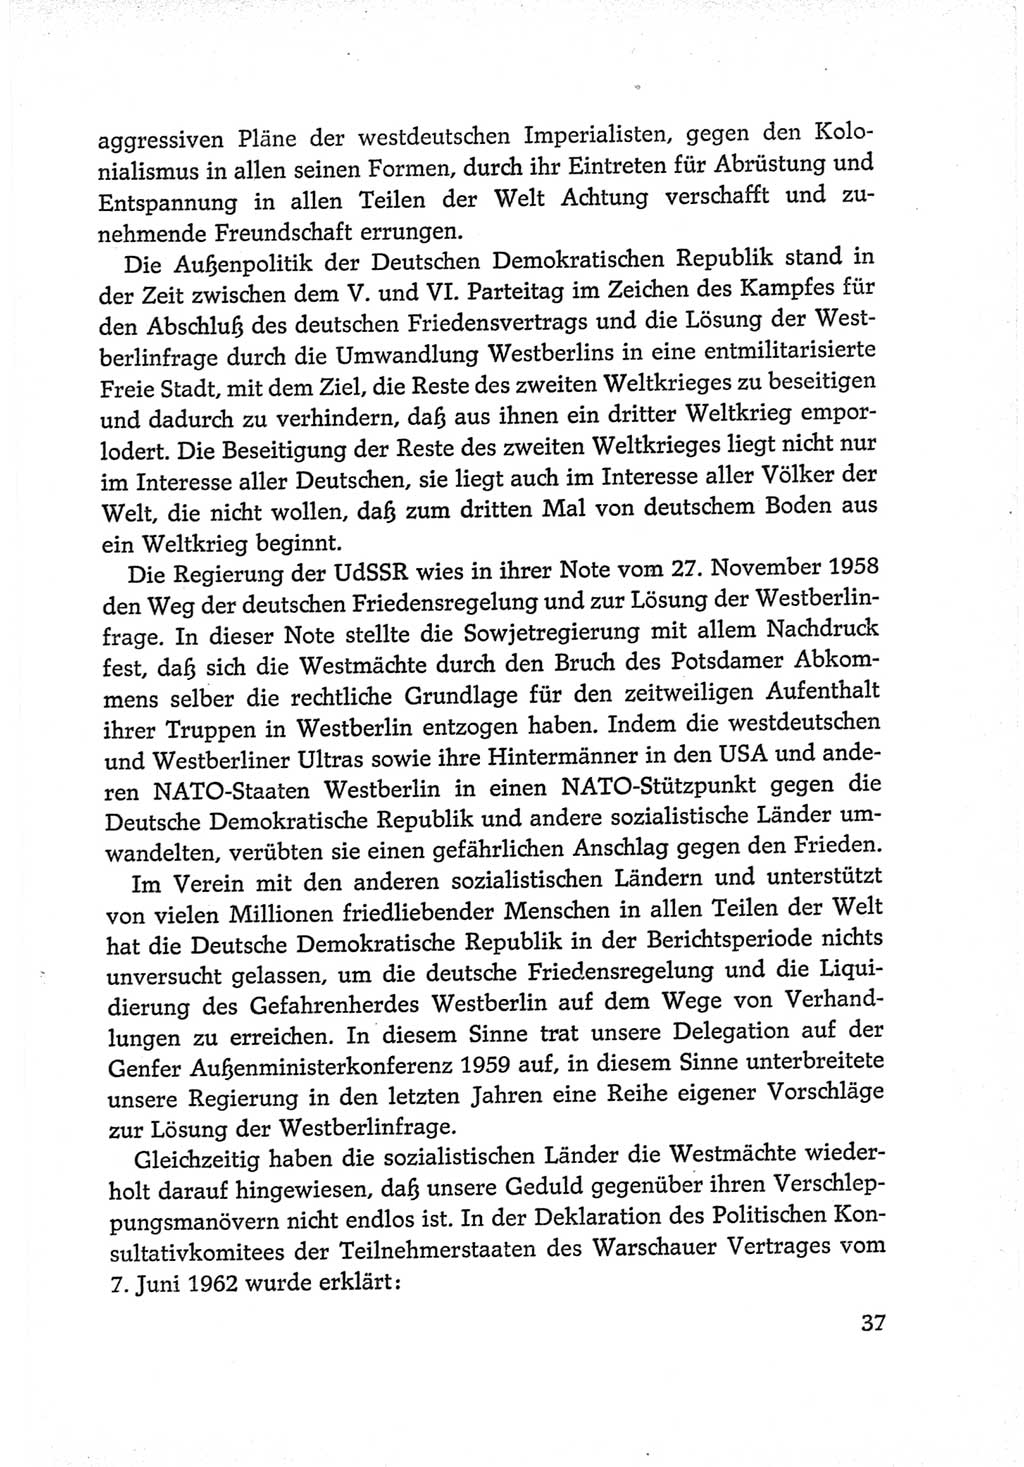 Protokoll der Verhandlungen des Ⅵ. Parteitages der Sozialistischen Einheitspartei Deutschlands (SED) [Deutsche Demokratische Republik (DDR)] 1963, Band Ⅳ, Seite 37 (Prot. Verh. Ⅵ. PT SED DDR 1963, Bd. Ⅳ, S. 37)